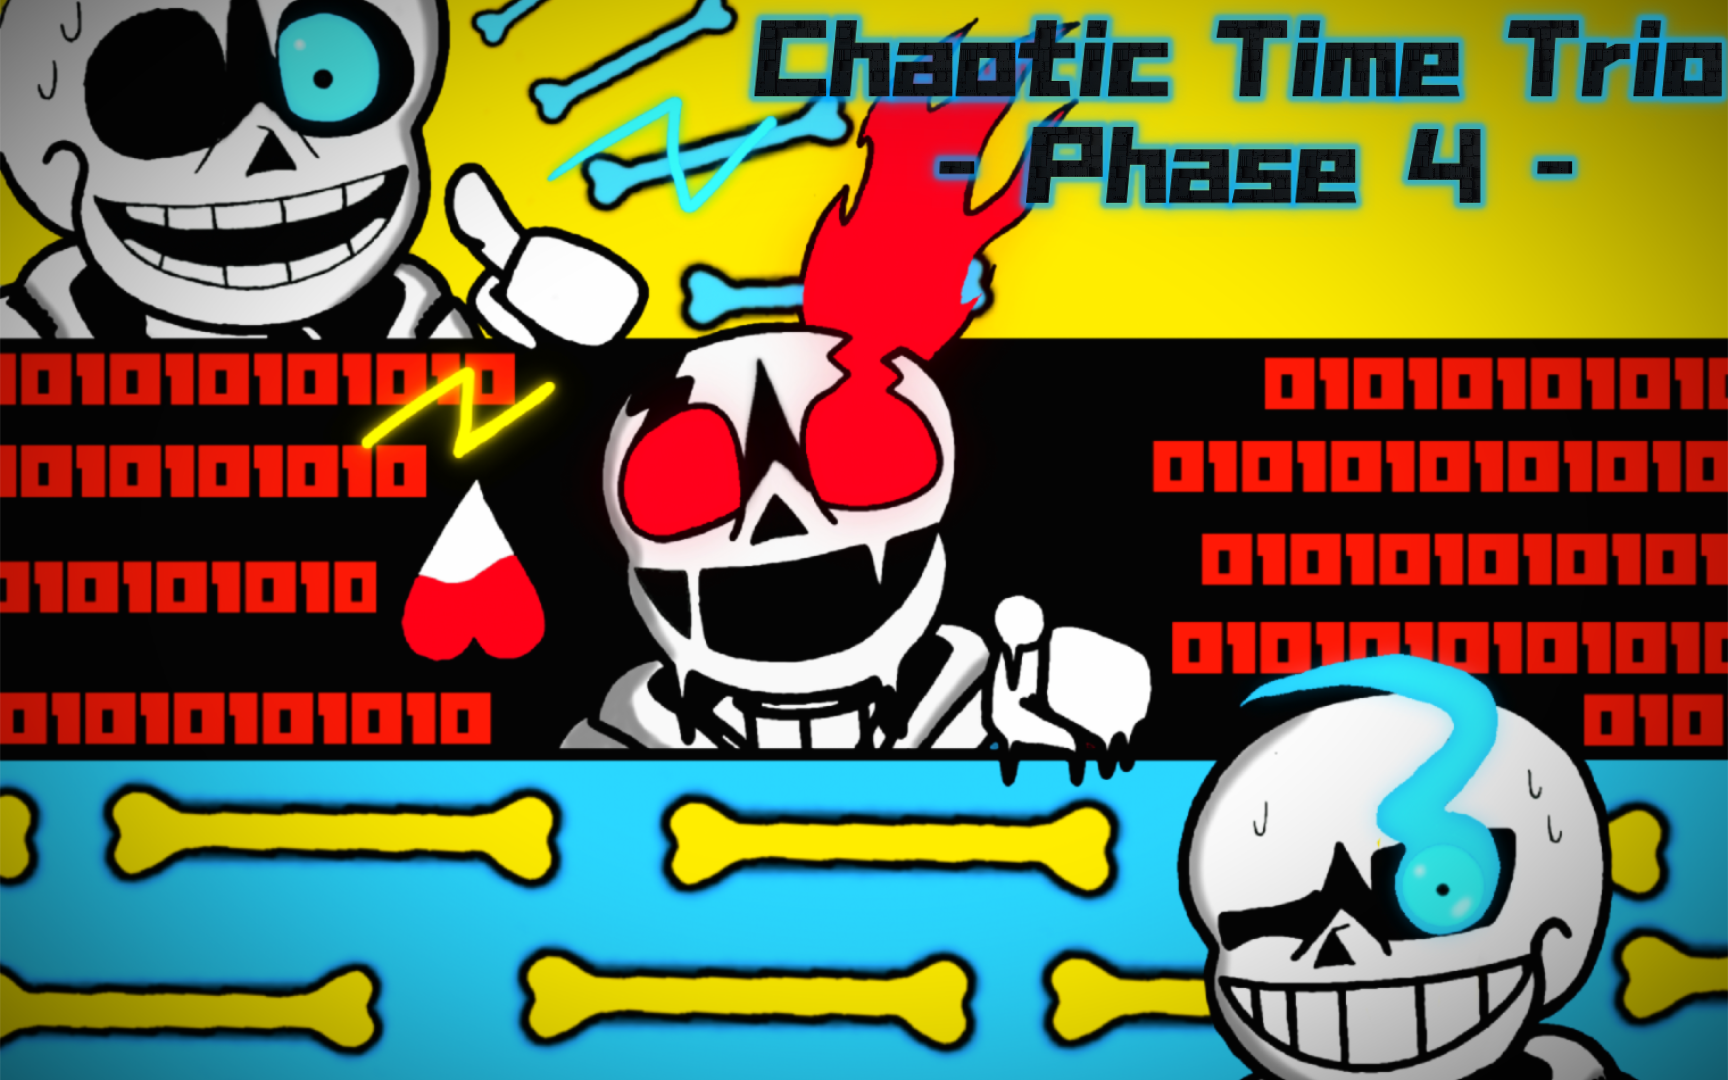 个人最高技术力!【Chaotic Time Trio】(三重混沌时光)-Phase 4- 全剧情绘画“永别了，孩子”